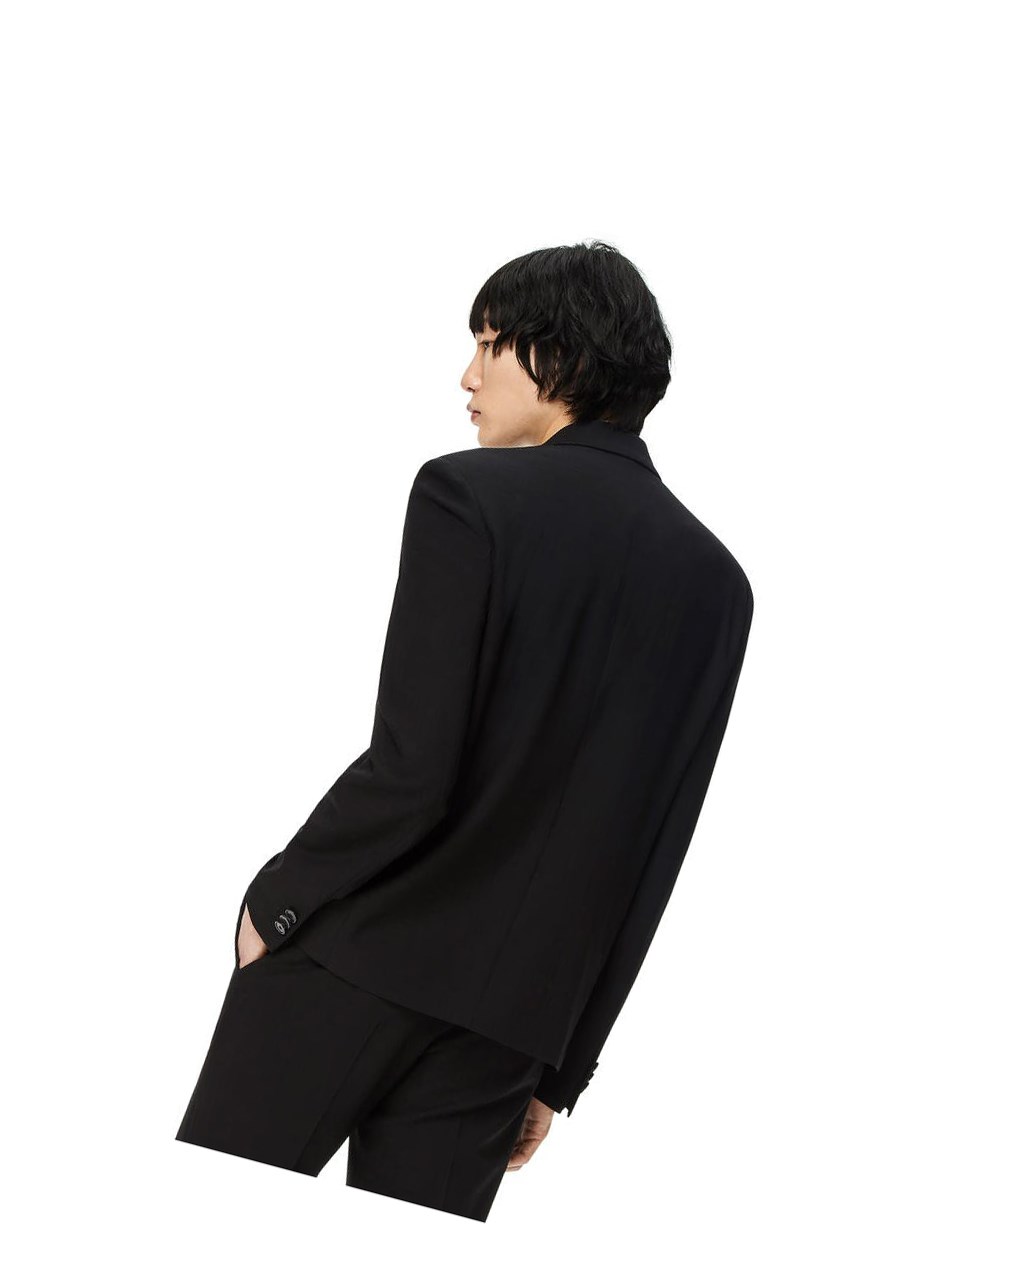 Loewe Single breasted jacket in wool Black | TM0251896